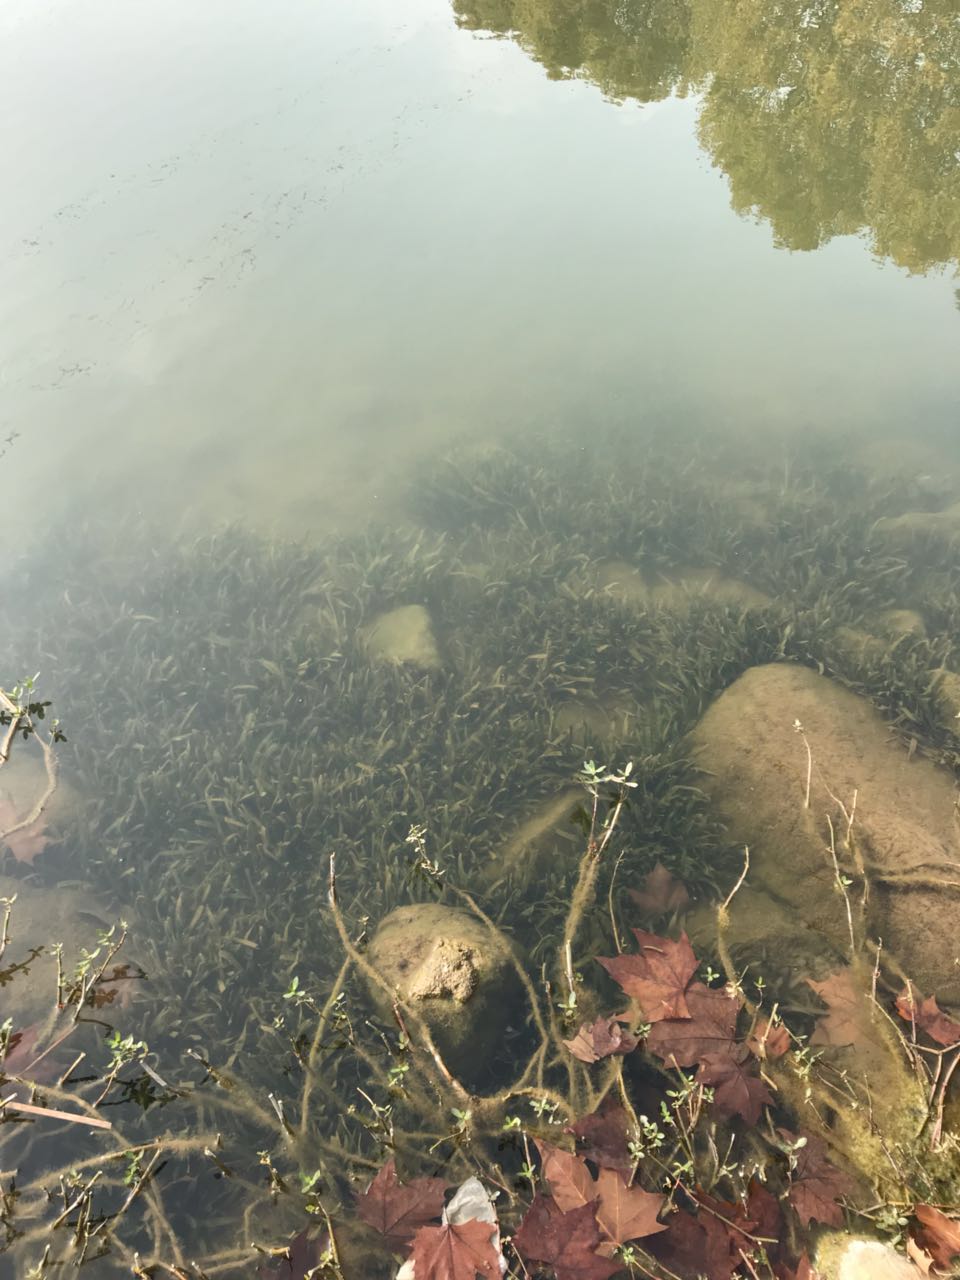 牛首山碧蓝水体一拍摄于2017年十一月